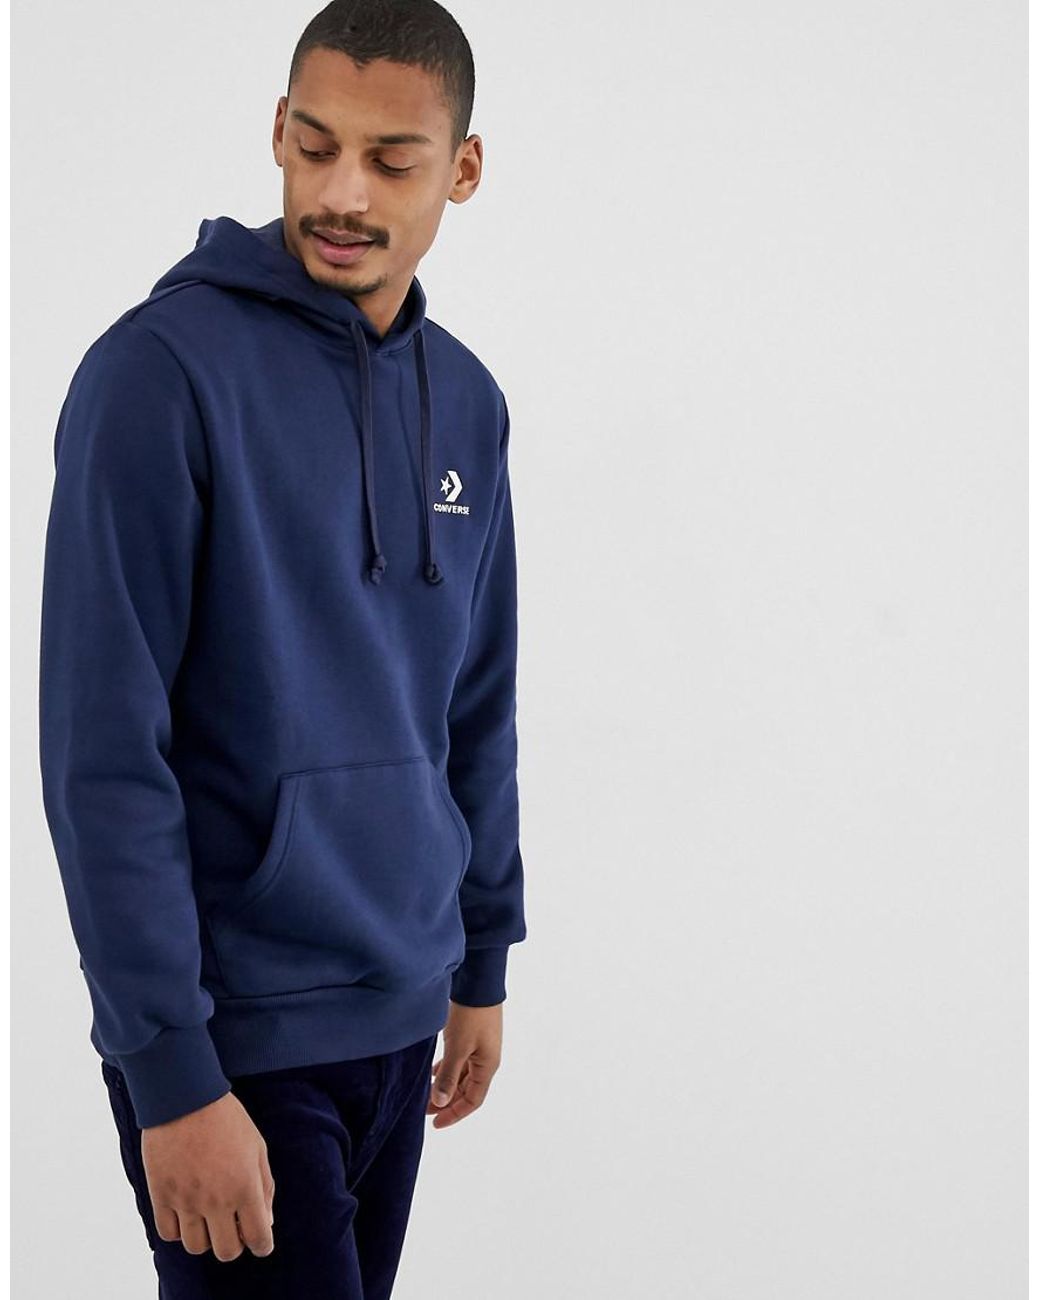 mens navy converse hoodie